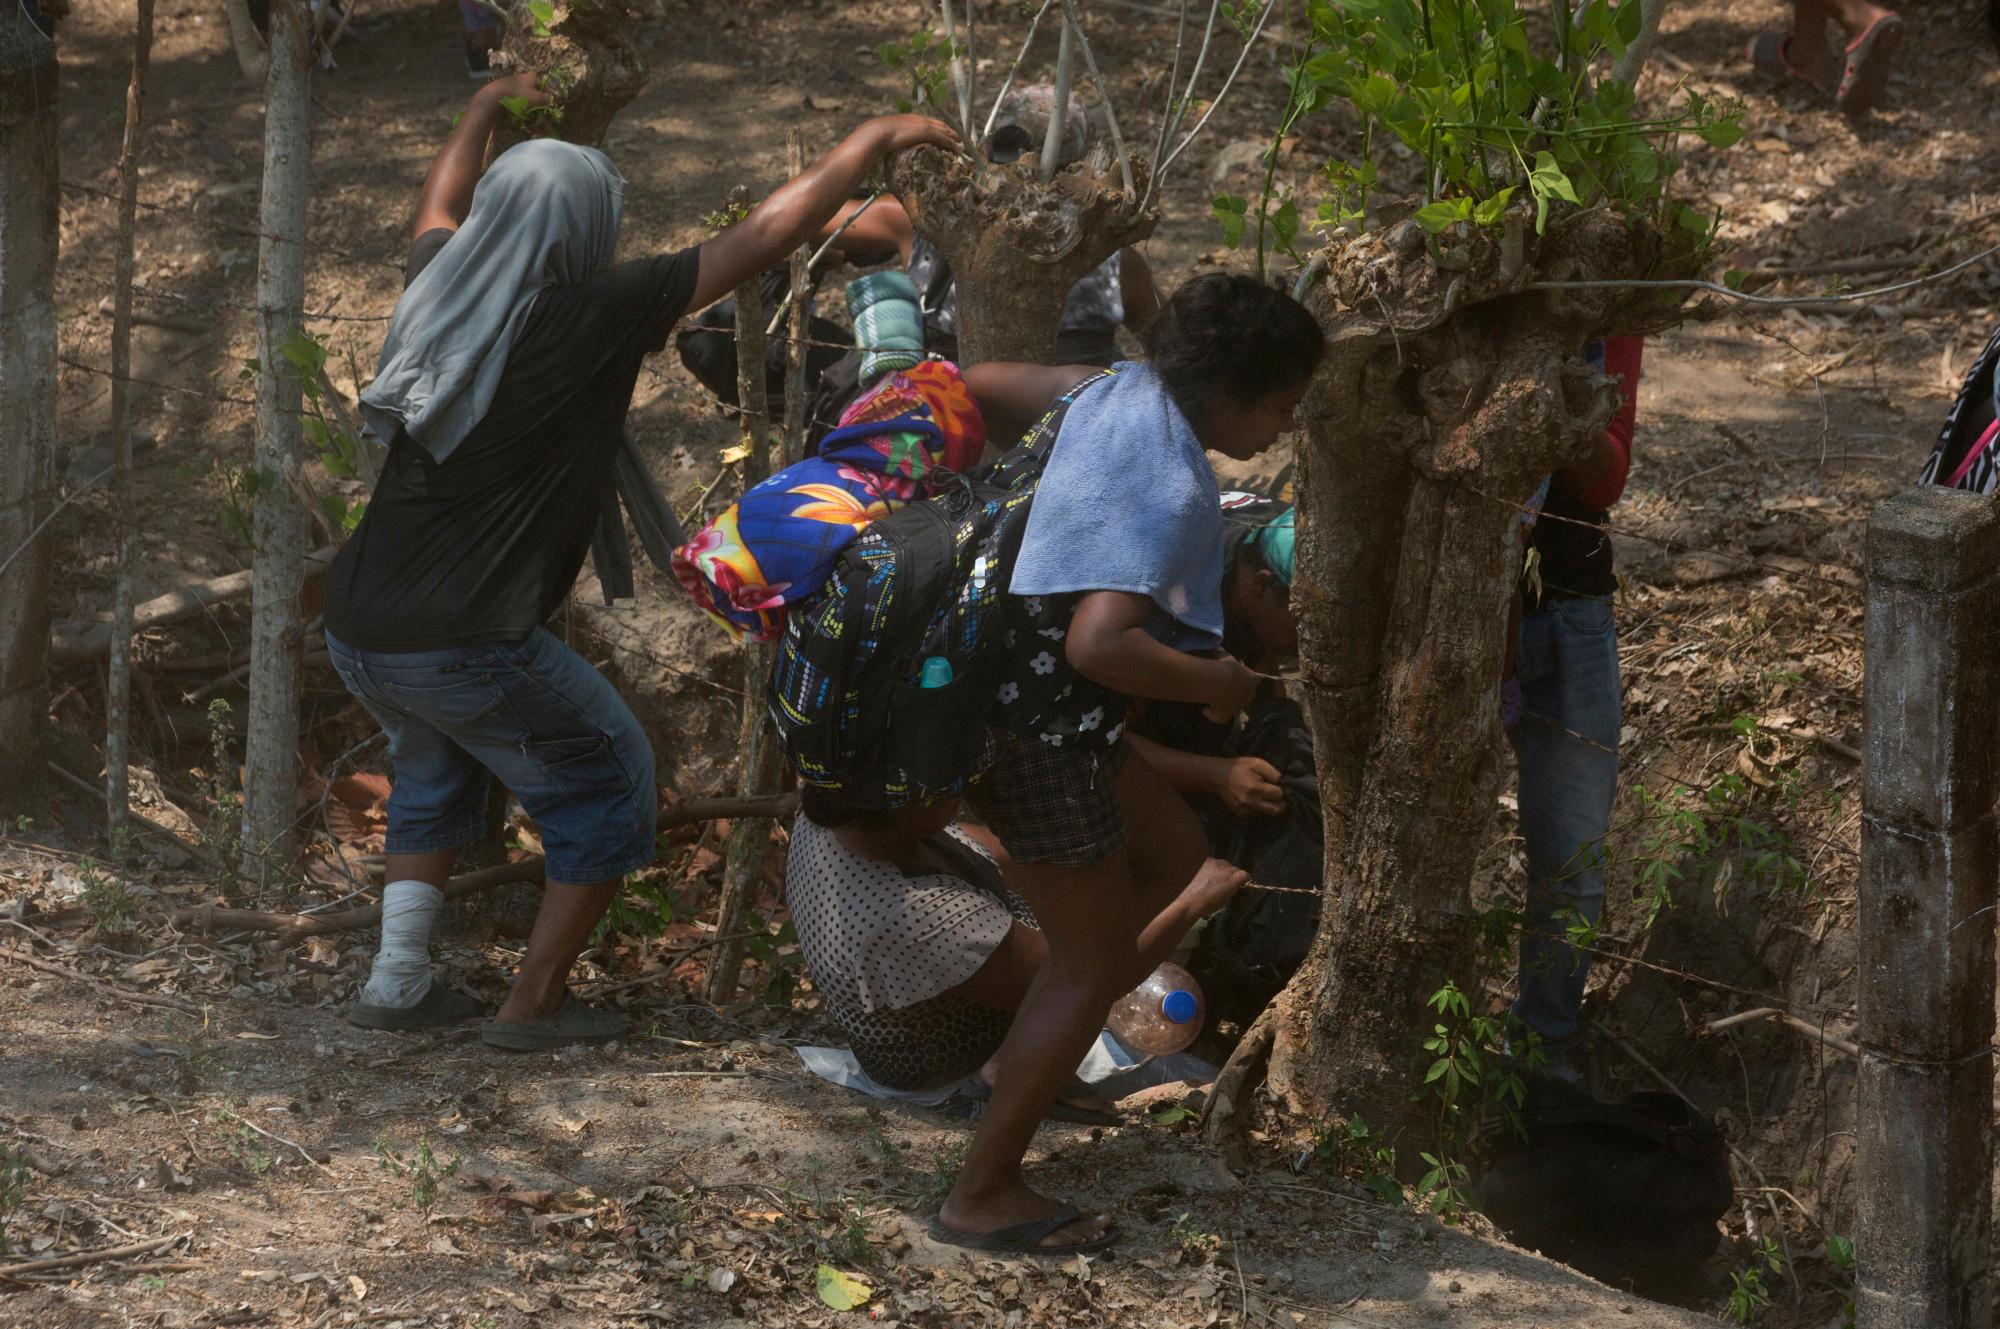 Los migrantes centroamericanos que viajaban por el sur de México hacia Estados Unidos, con temor, recordaron su frenético escape de la policía el día anterior, cruzan por debajo de cercas de alambre de púas después de pasar la noche en el bosque.